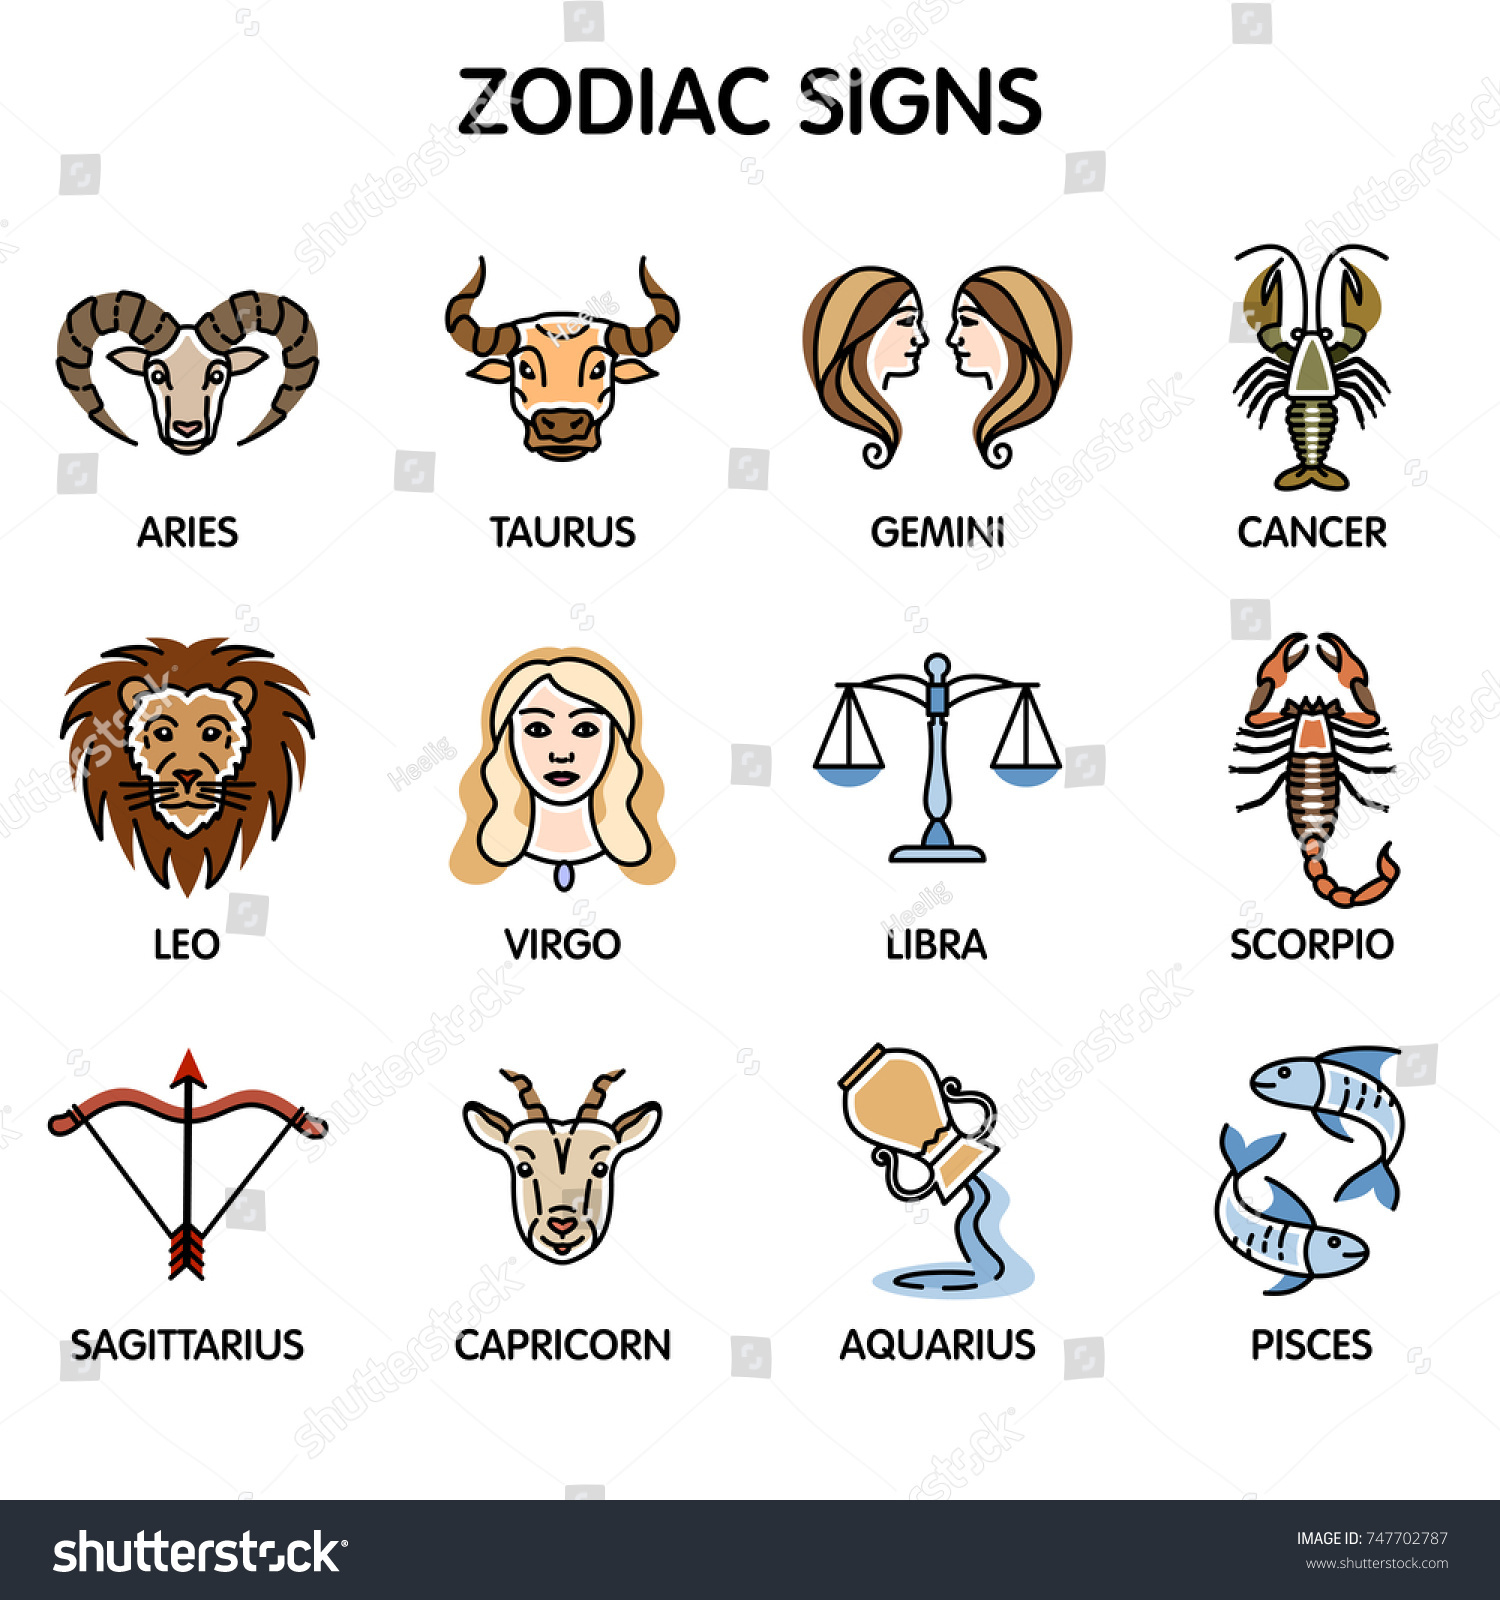 Scorpio aries and zodiac signs Scorpio Compatibility